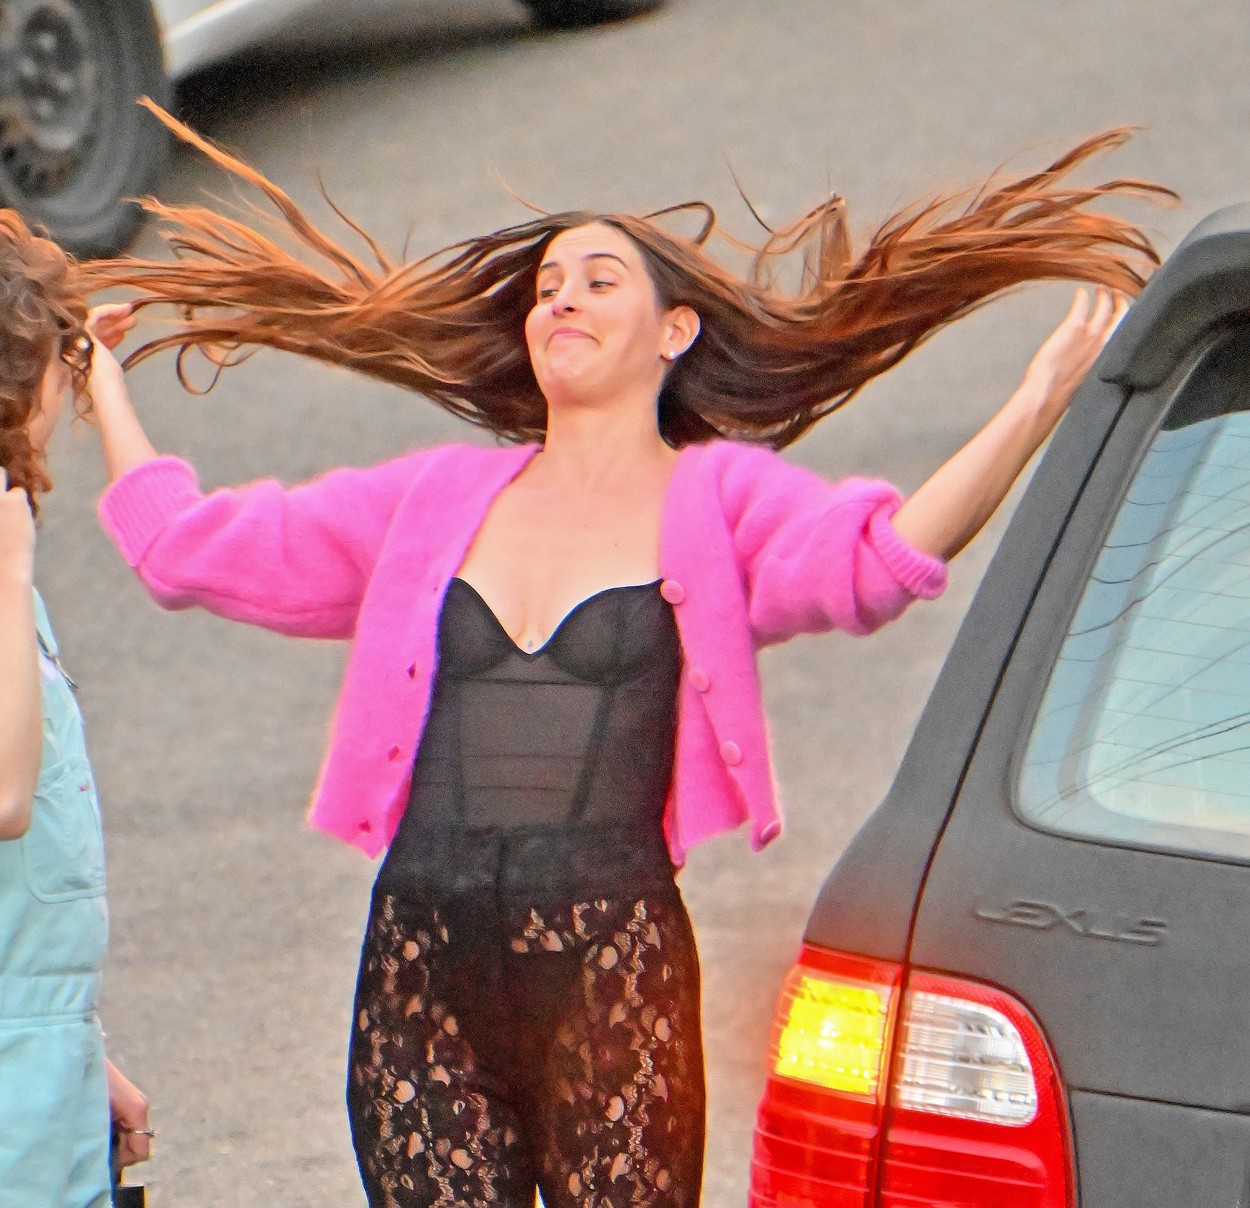 Scout Willis, într-o ținută sexy, cu părul în vânt, lângă mașina personală